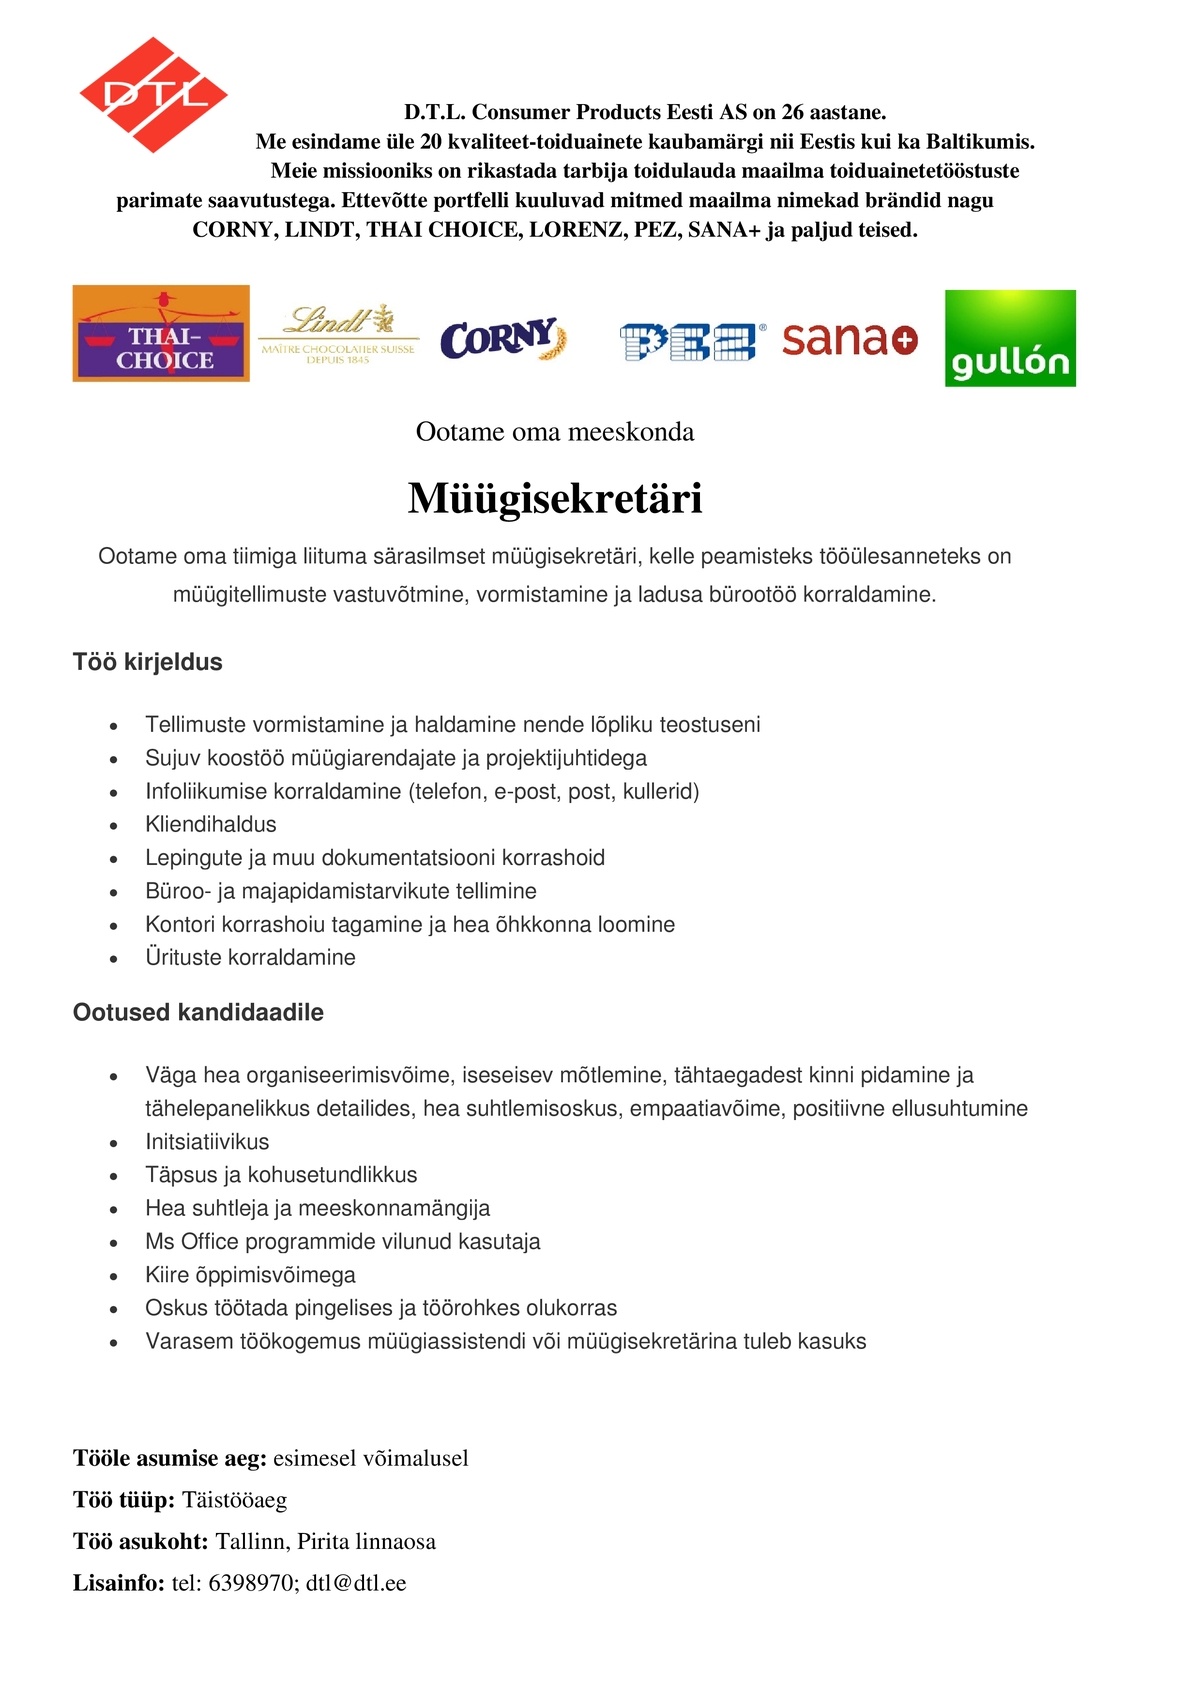 D.T.L. Consumer Products Eesti AS Müügisekretär